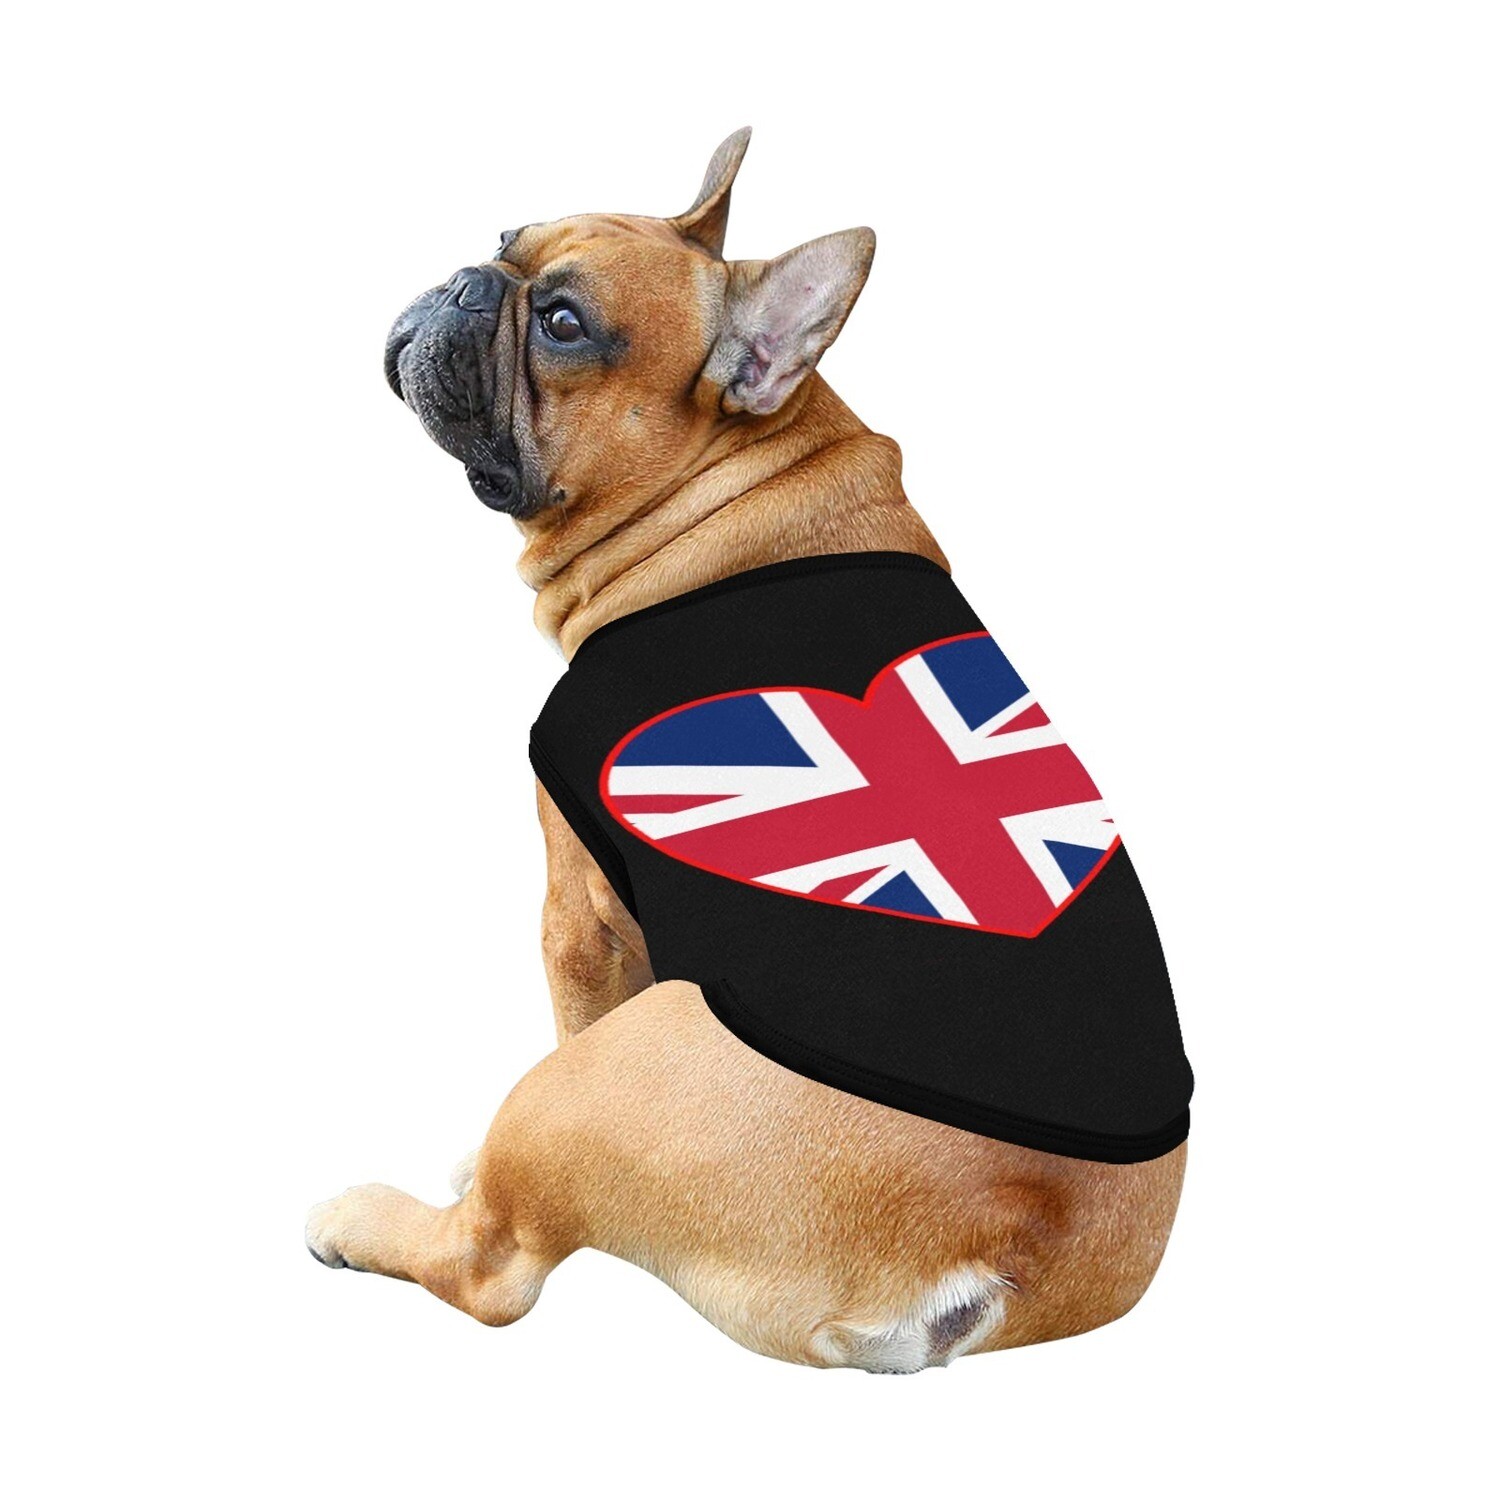 🐕🇬🇧 I love United Kingdom, Union Jack flag, dog t-shirt, dog gift, dog tank top, dog shirt, dog clothes, gift, 7 sizes XS to 3XL, heart shape, black